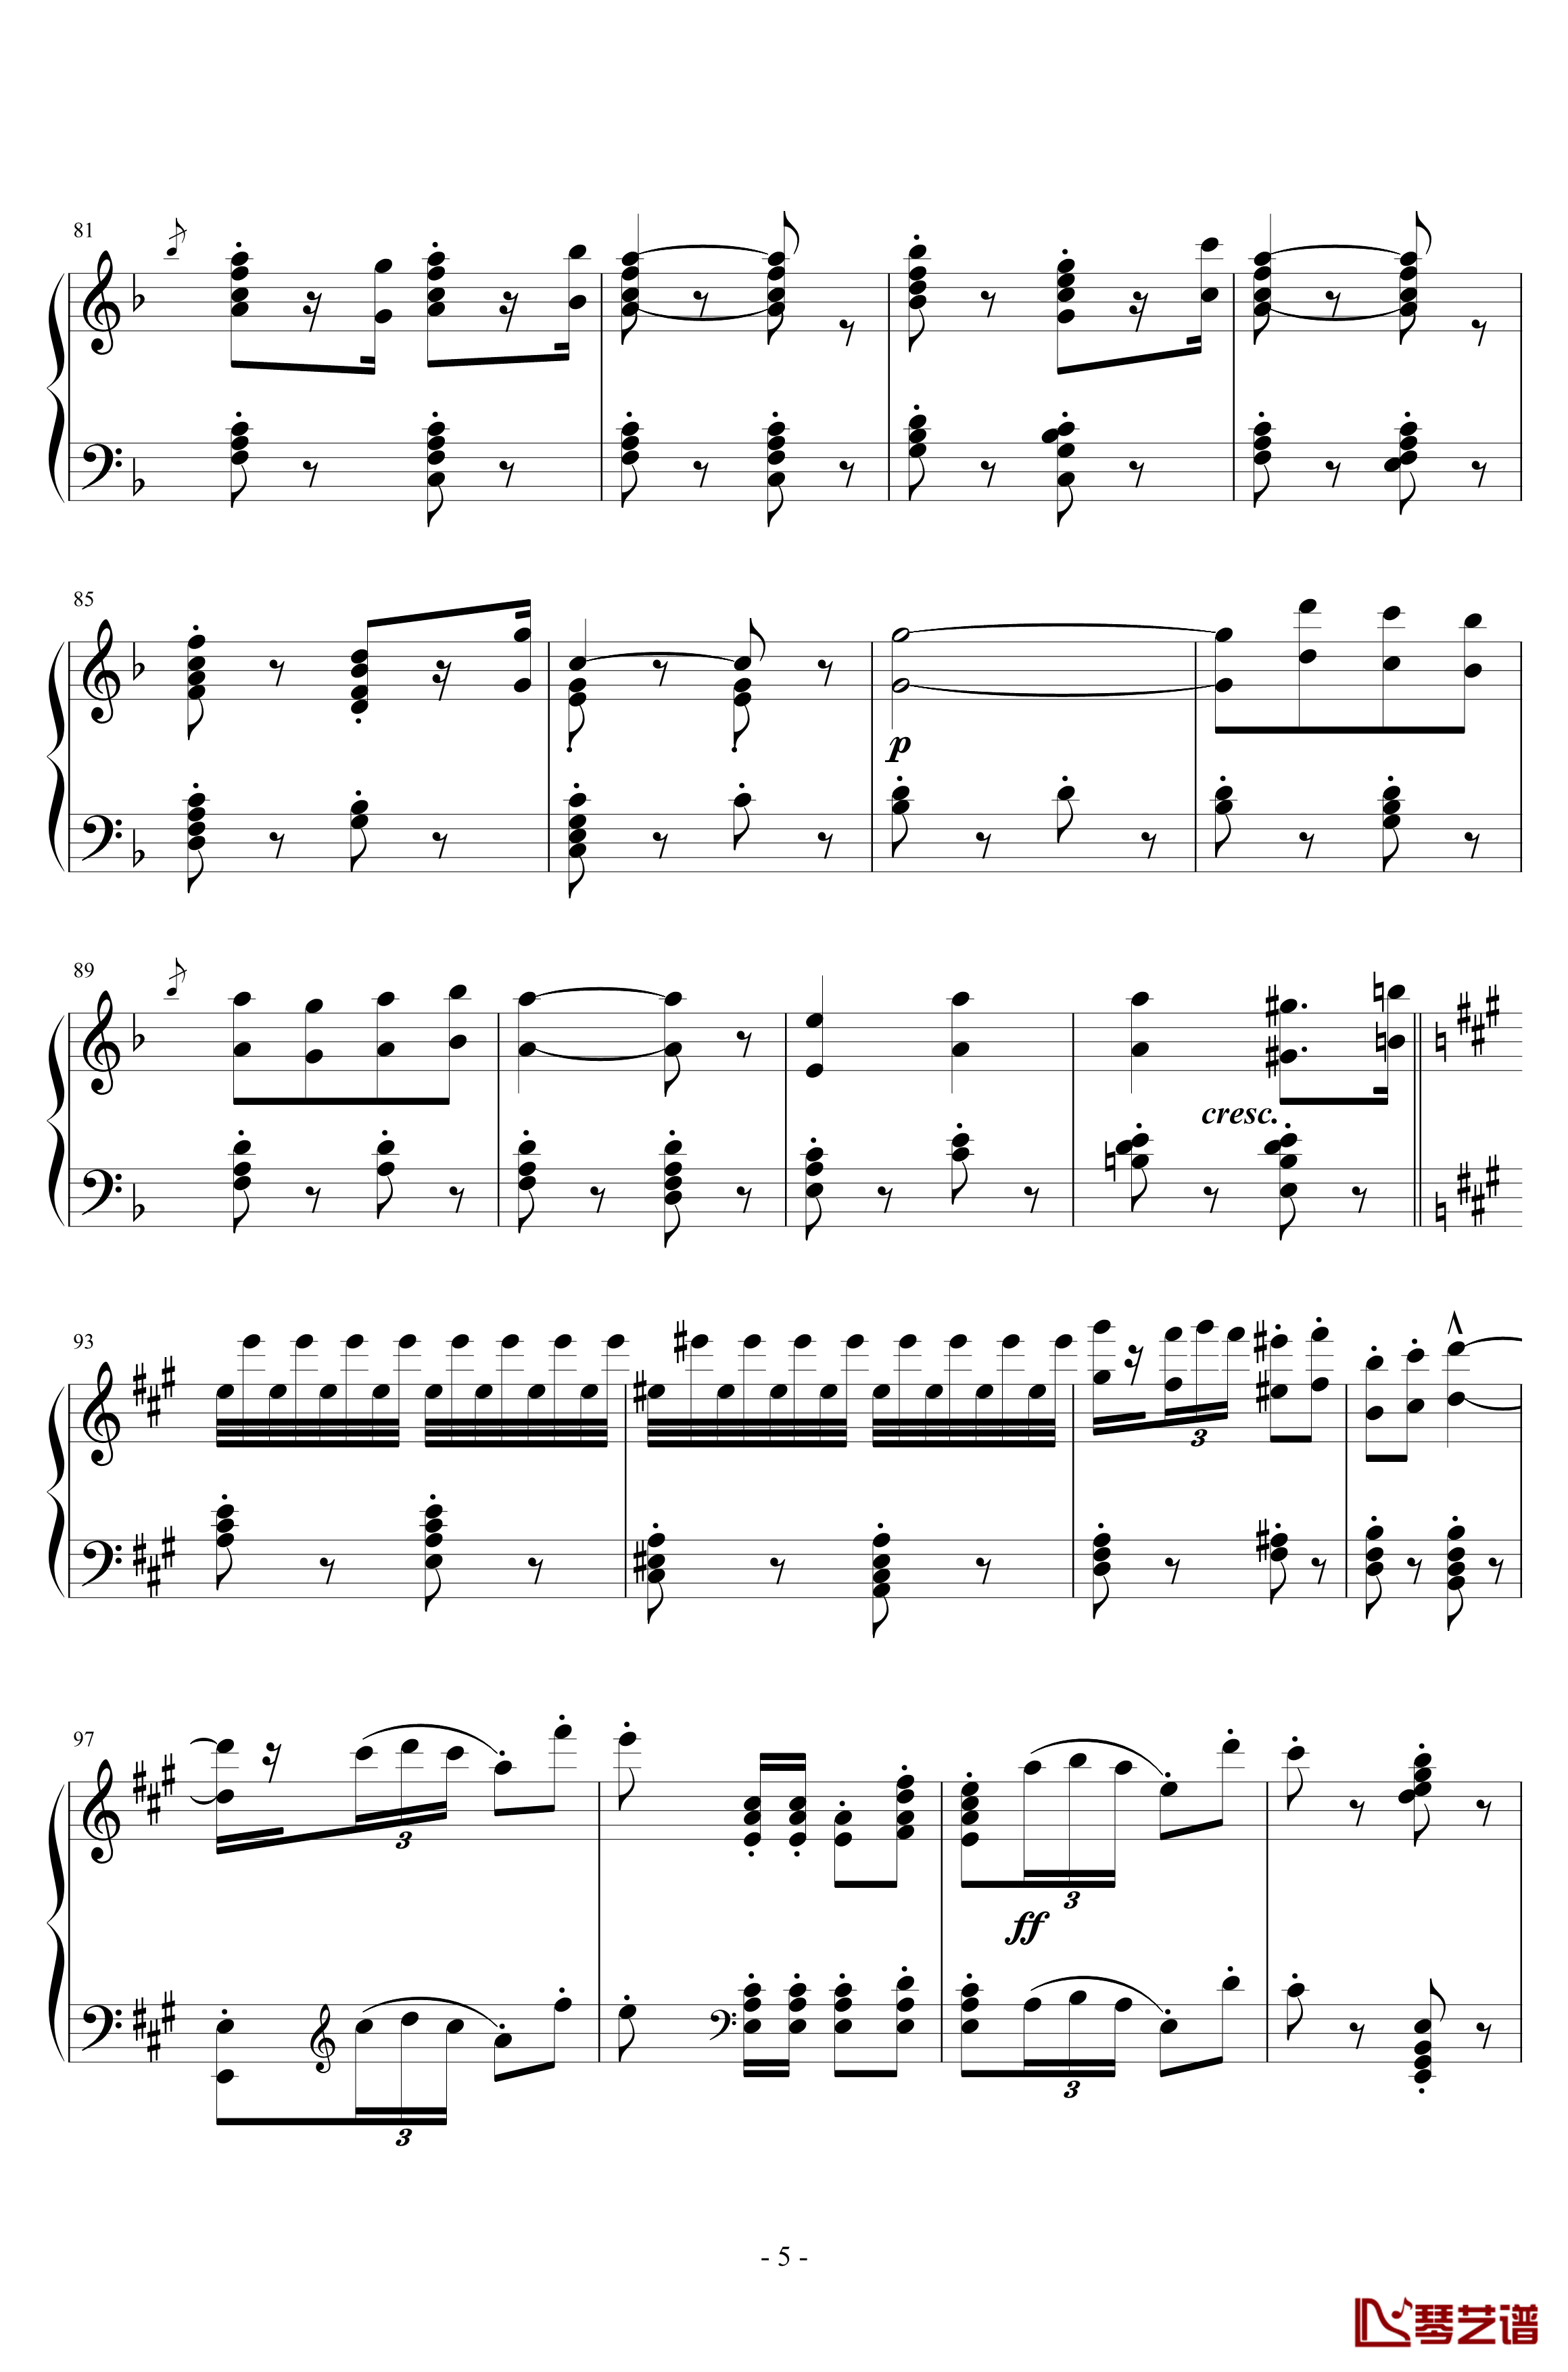 卡门序曲钢琴谱-朝鲜风格-比才-Bizet5